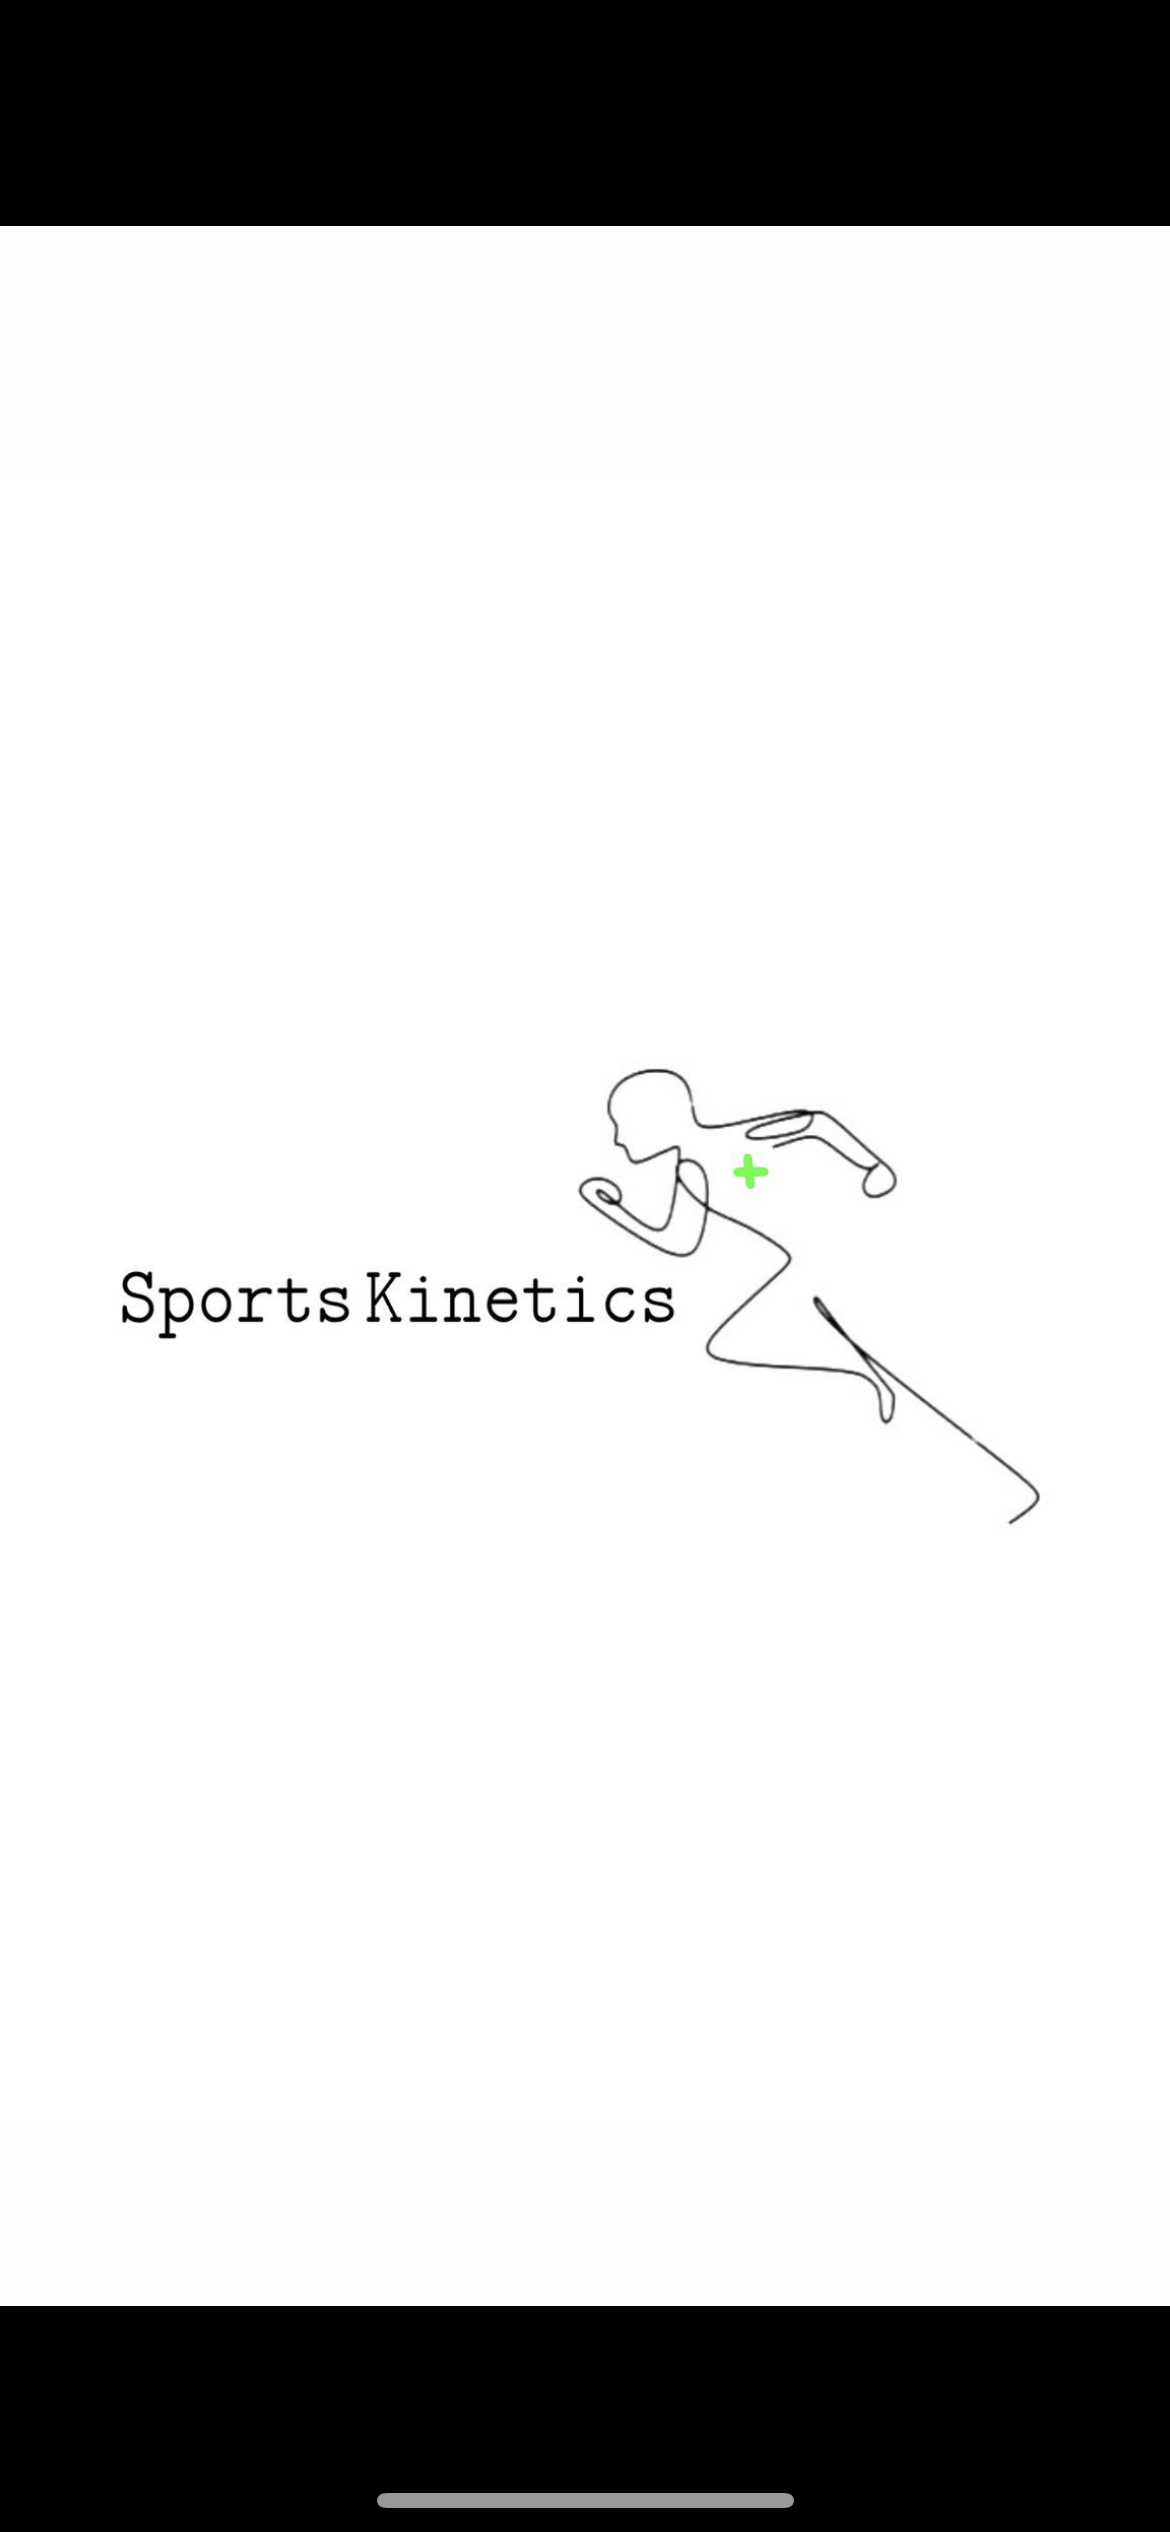 Sports Kinetics Rehab S.R.L logo